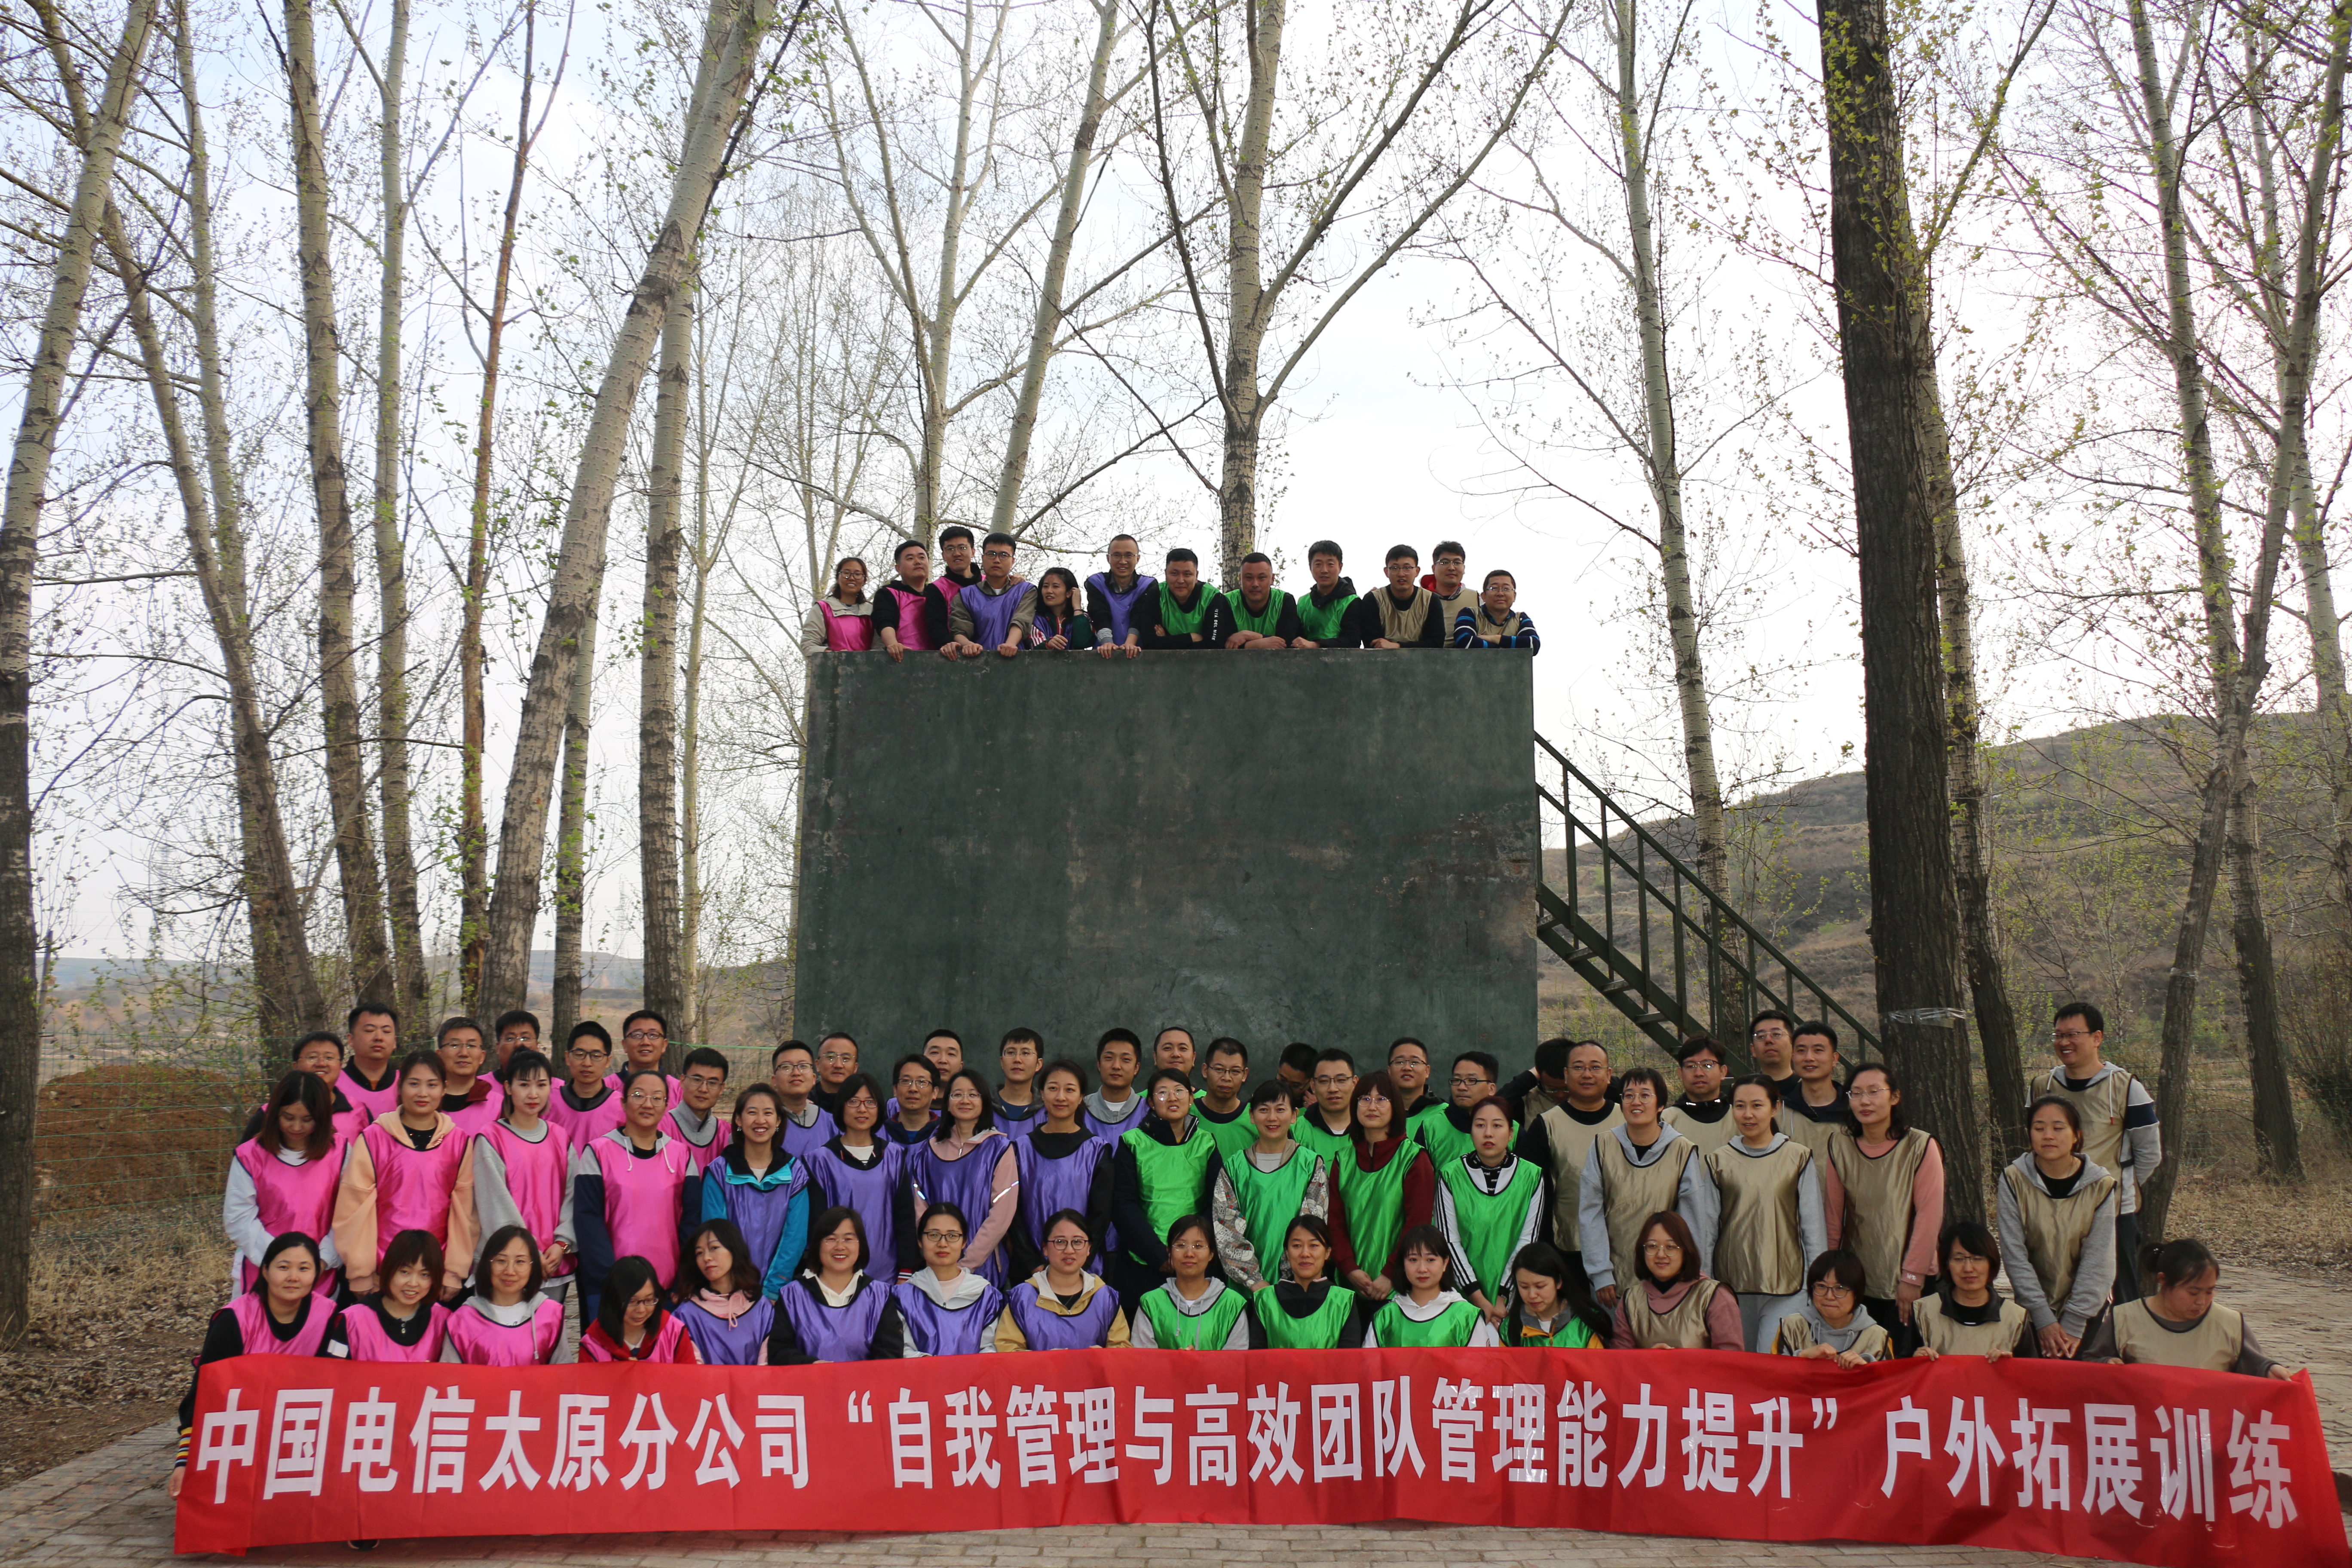 中國電信-團隊管理能力提升戶外拓展訓練